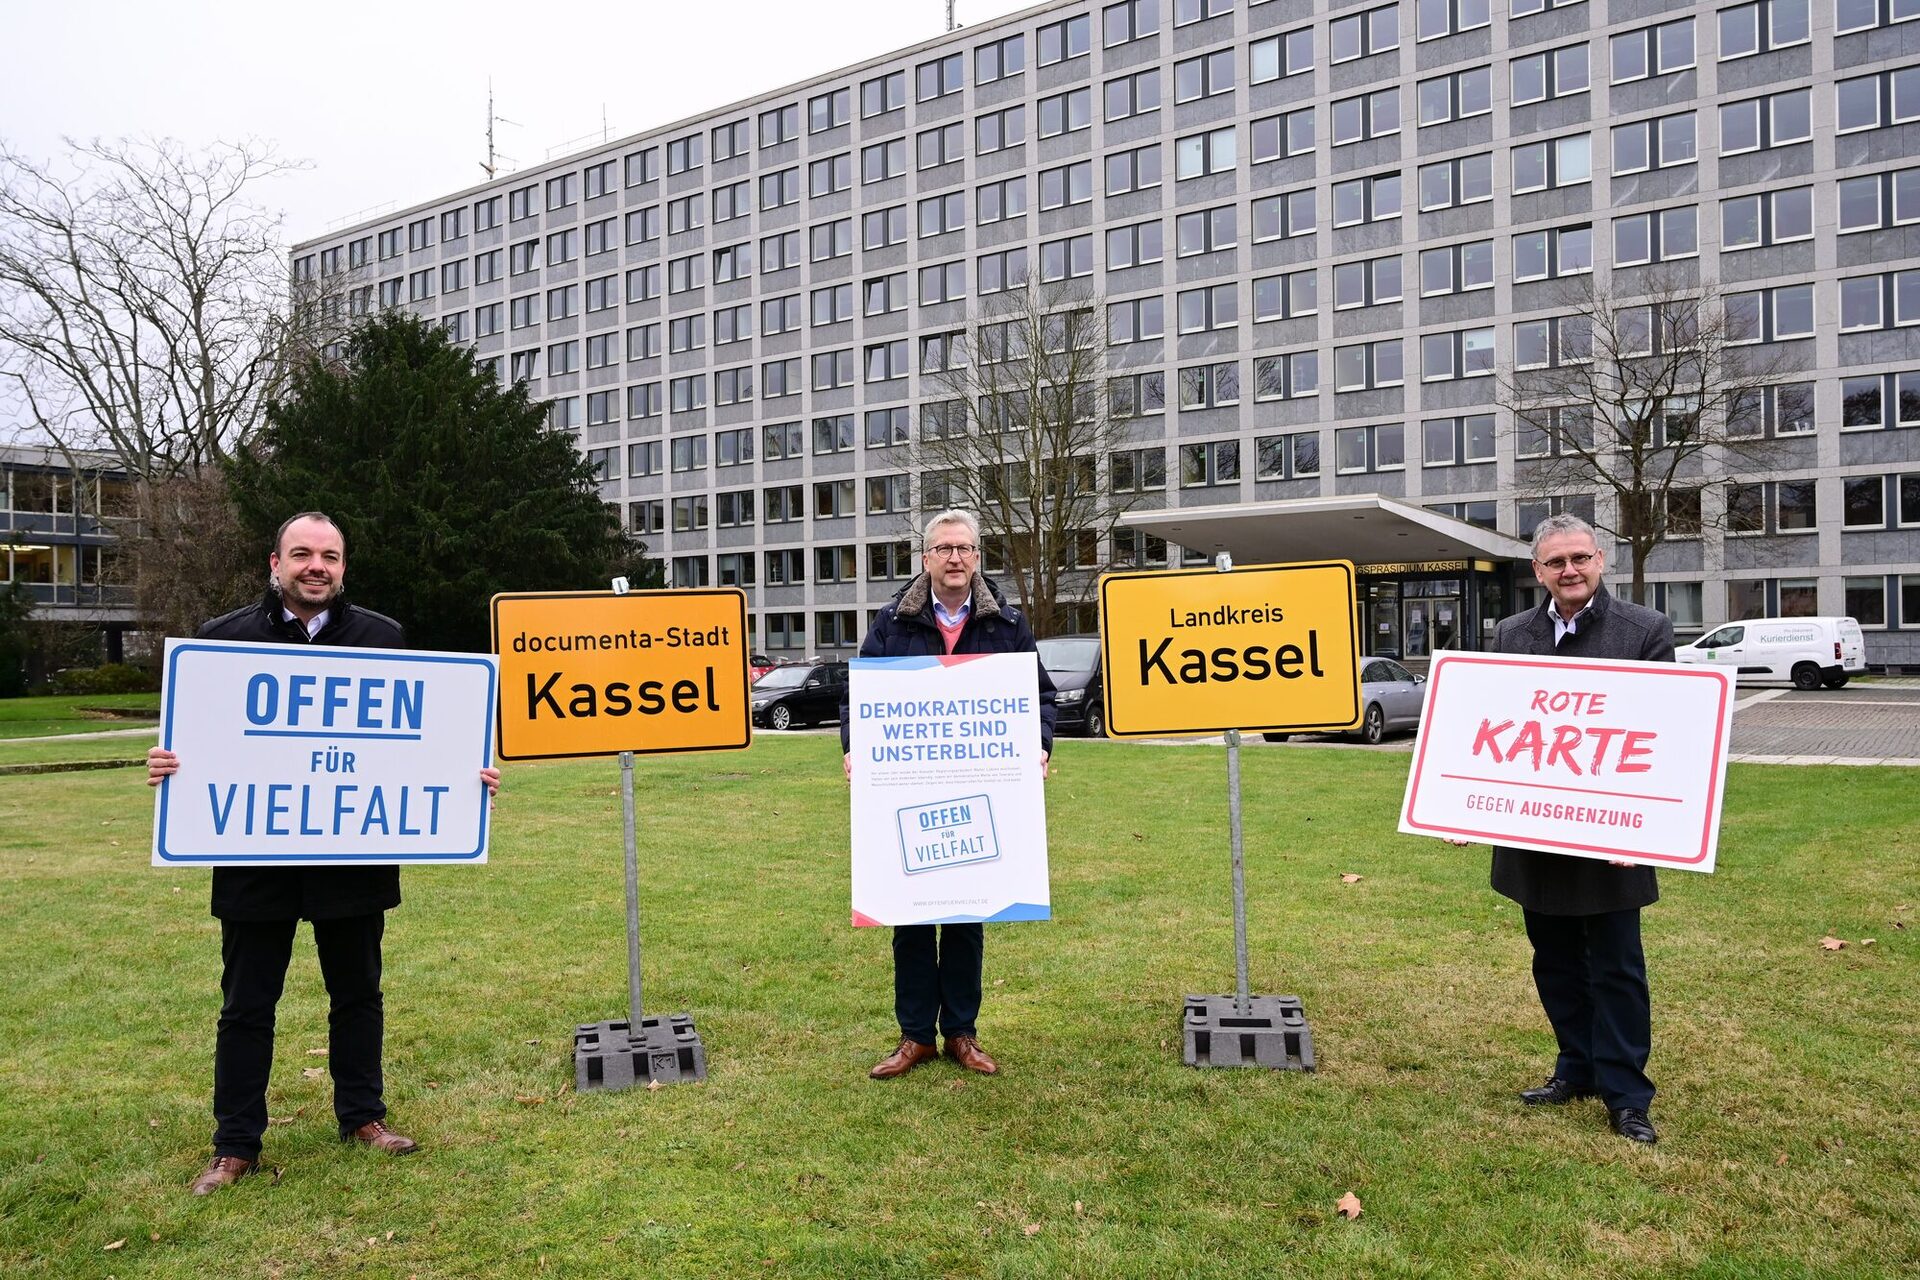 von links nach rechts: Kassels Oberbürgermeister Christian Geselle, Regierungspräsident Hermann-Josef Klüber und Uwe Schmidt, Landrat des Landkreises Kassel, stehen mit Plakaten der Initiative "Offen für Vielfalt" auf der Wiese vor dem Regierungspräsidium.